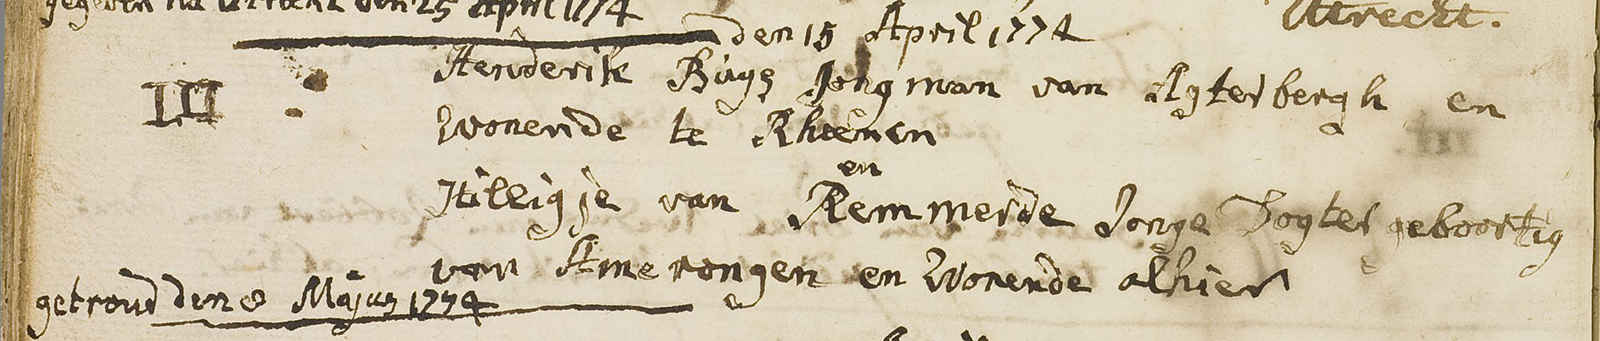 hendrik_buijs_en_hillegonda_van_remmerden_april_1774.jpg